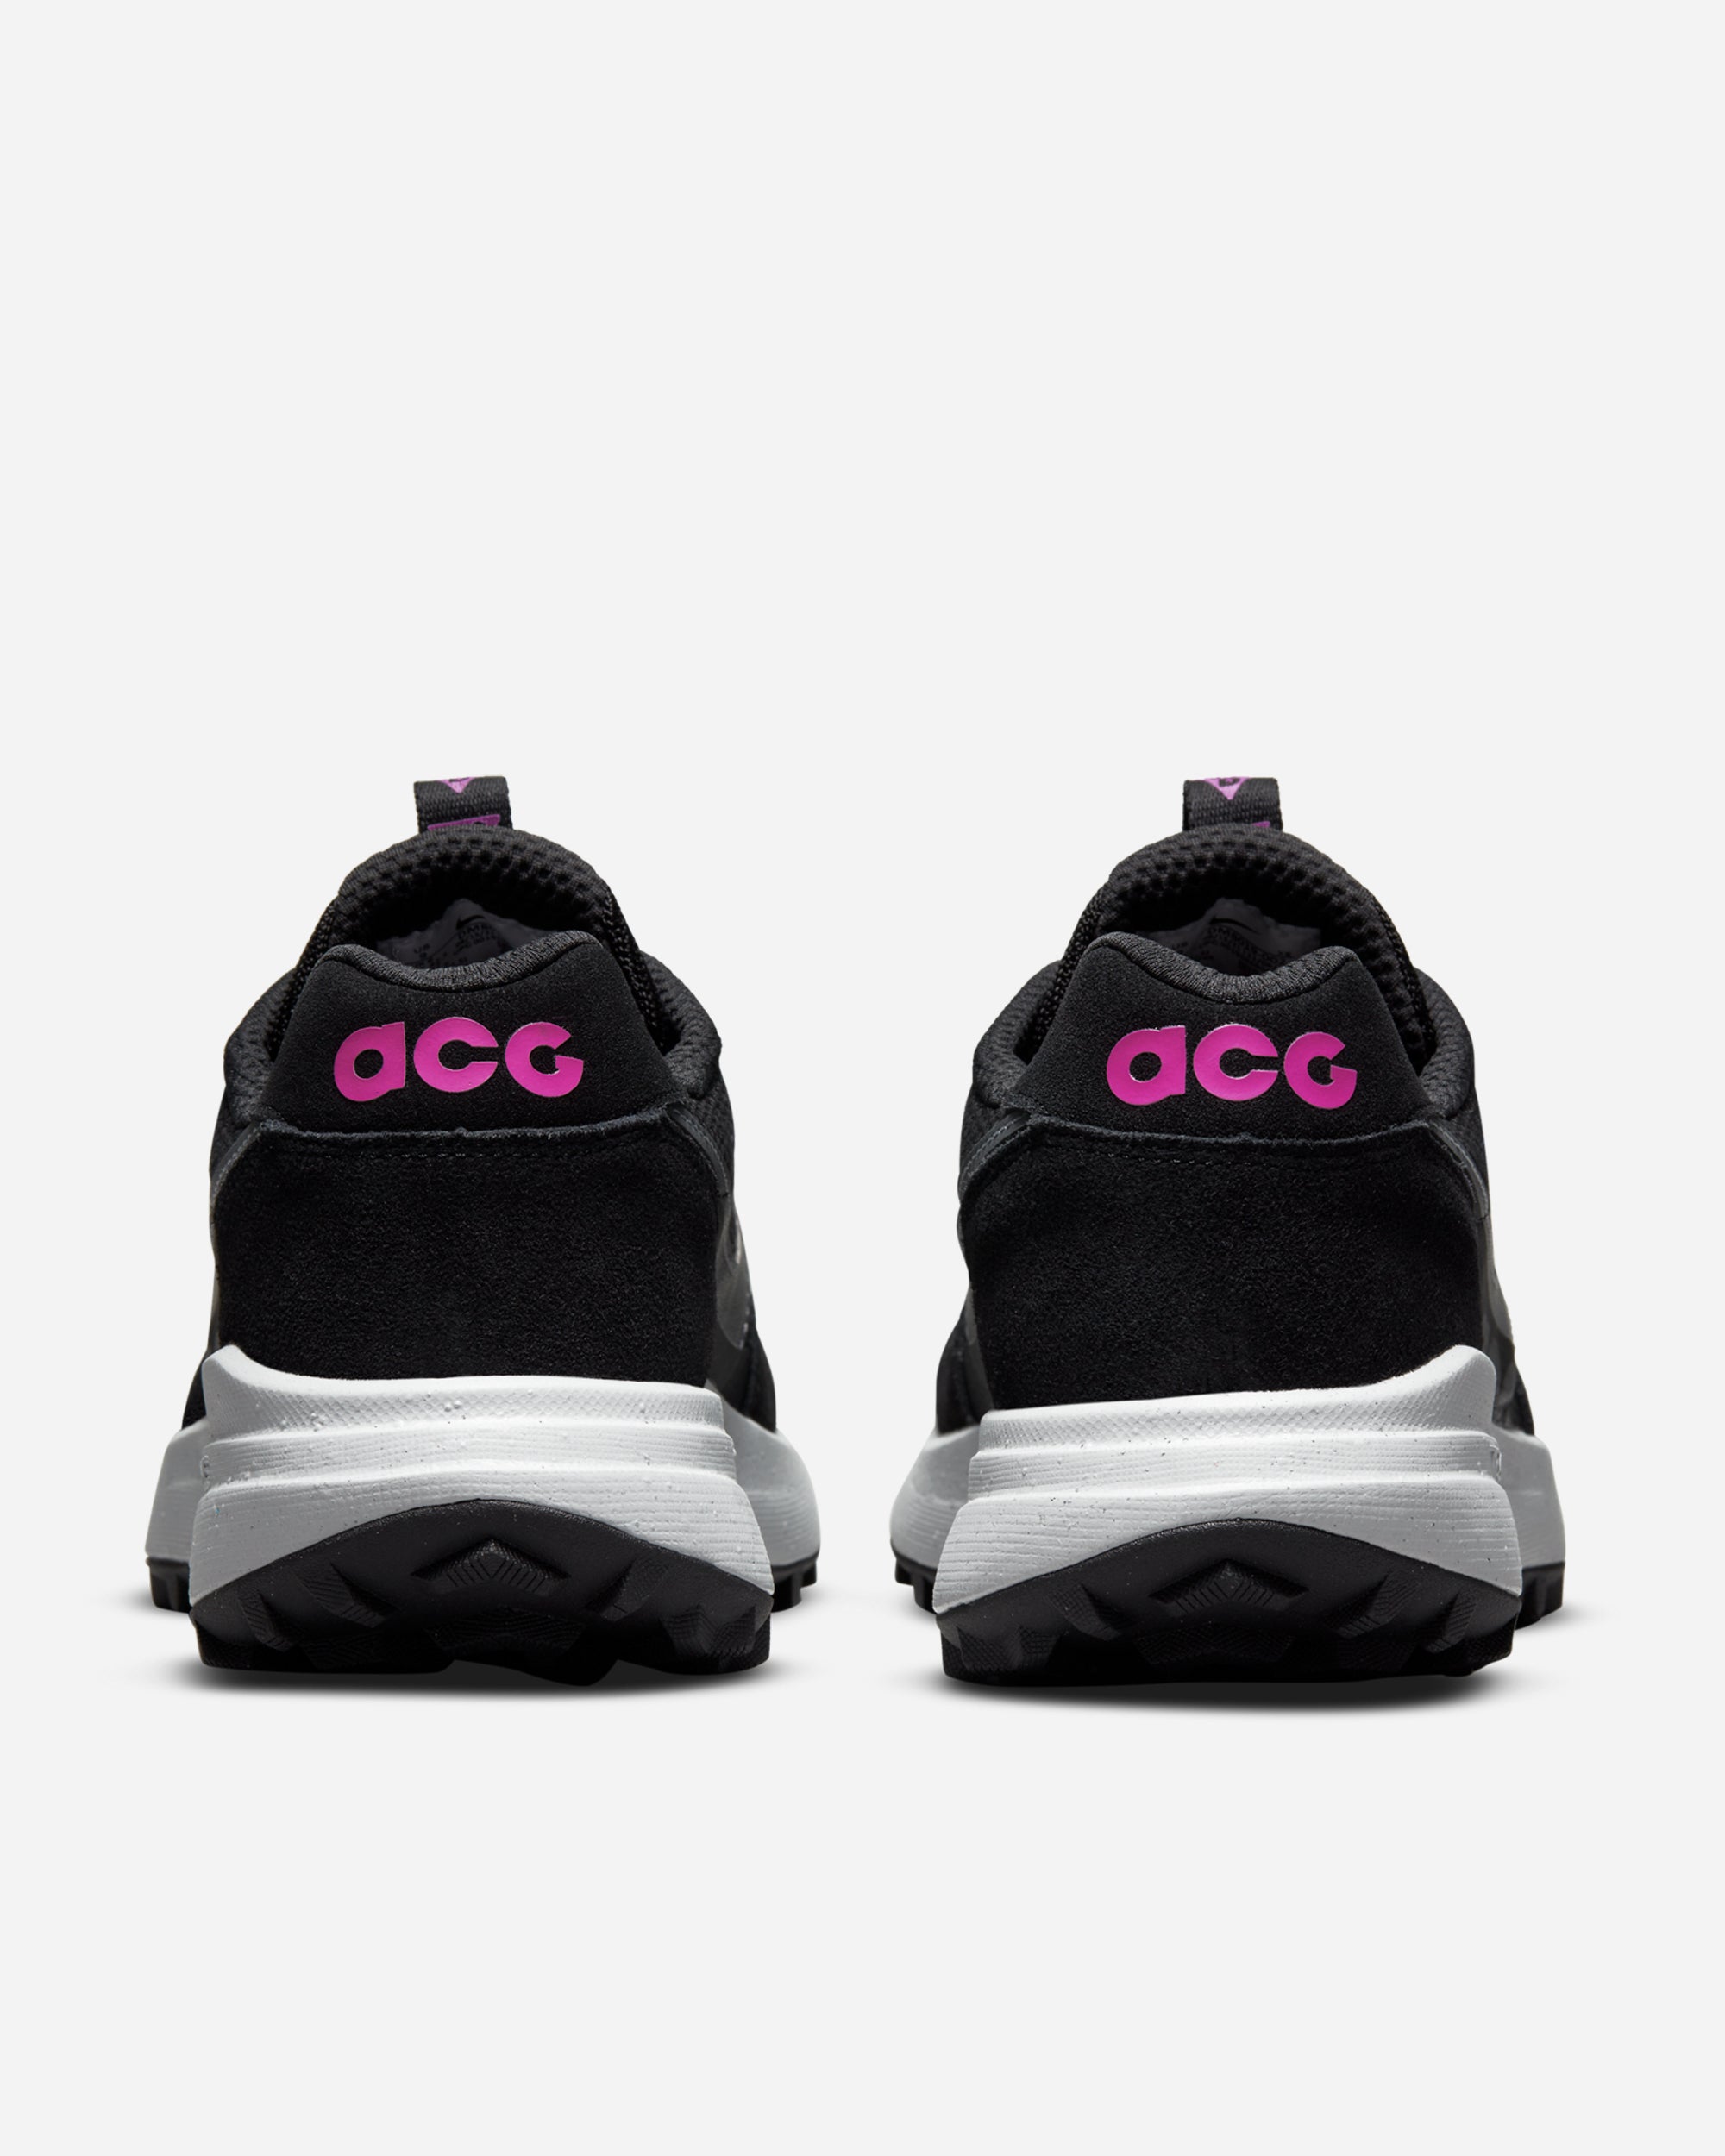 Nike ACG Lowcate BLACK/COOL GREY-BLACK-WOLF GRE DM8019-002